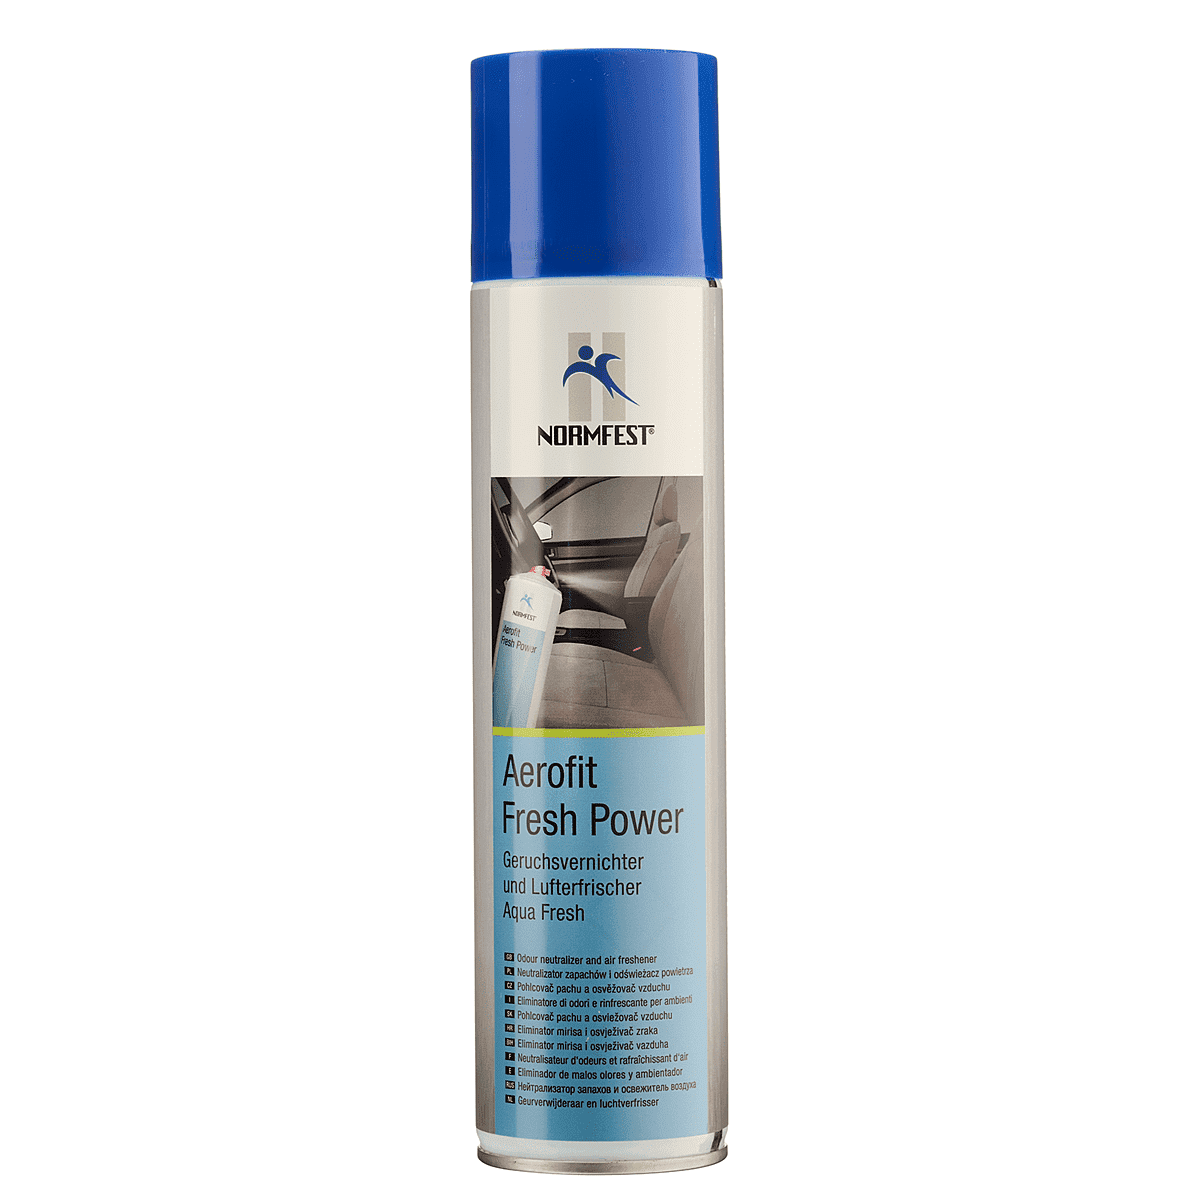 Coolwaterduft Geruchsvernichter und Lufterfrischer Aerofit Fresh Power 400 ml